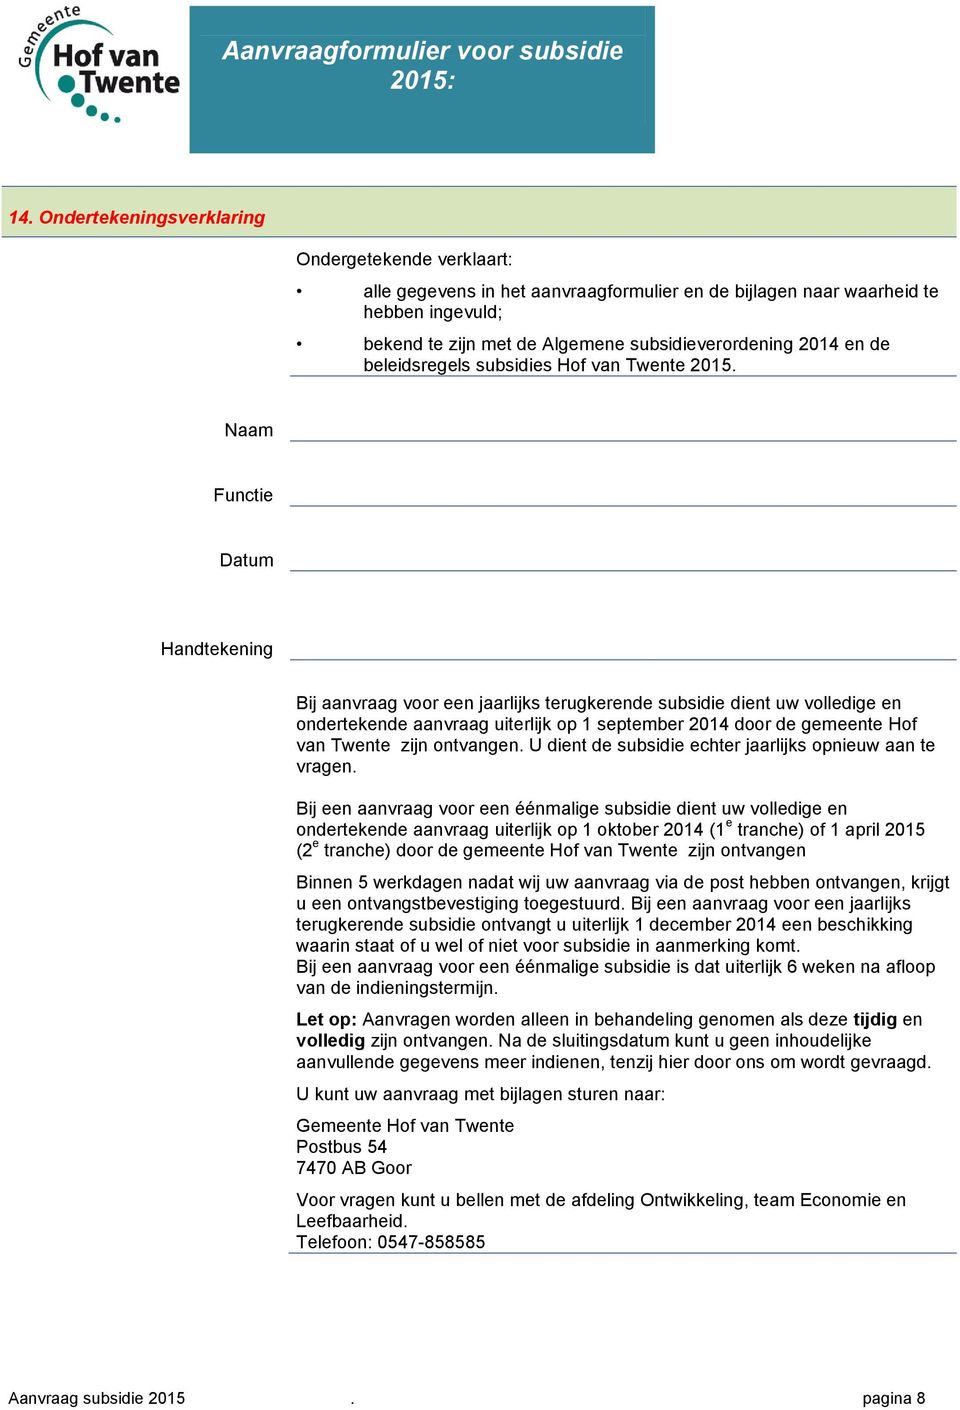 Naam Functie Datum Handtekening Bij aanvraag voor een jaarlijks terugkerende subsidie dient uw volledige en ondertekende aanvraag uiterlijk op 1 september 2014 door de gemeente Hof van Twente zijn